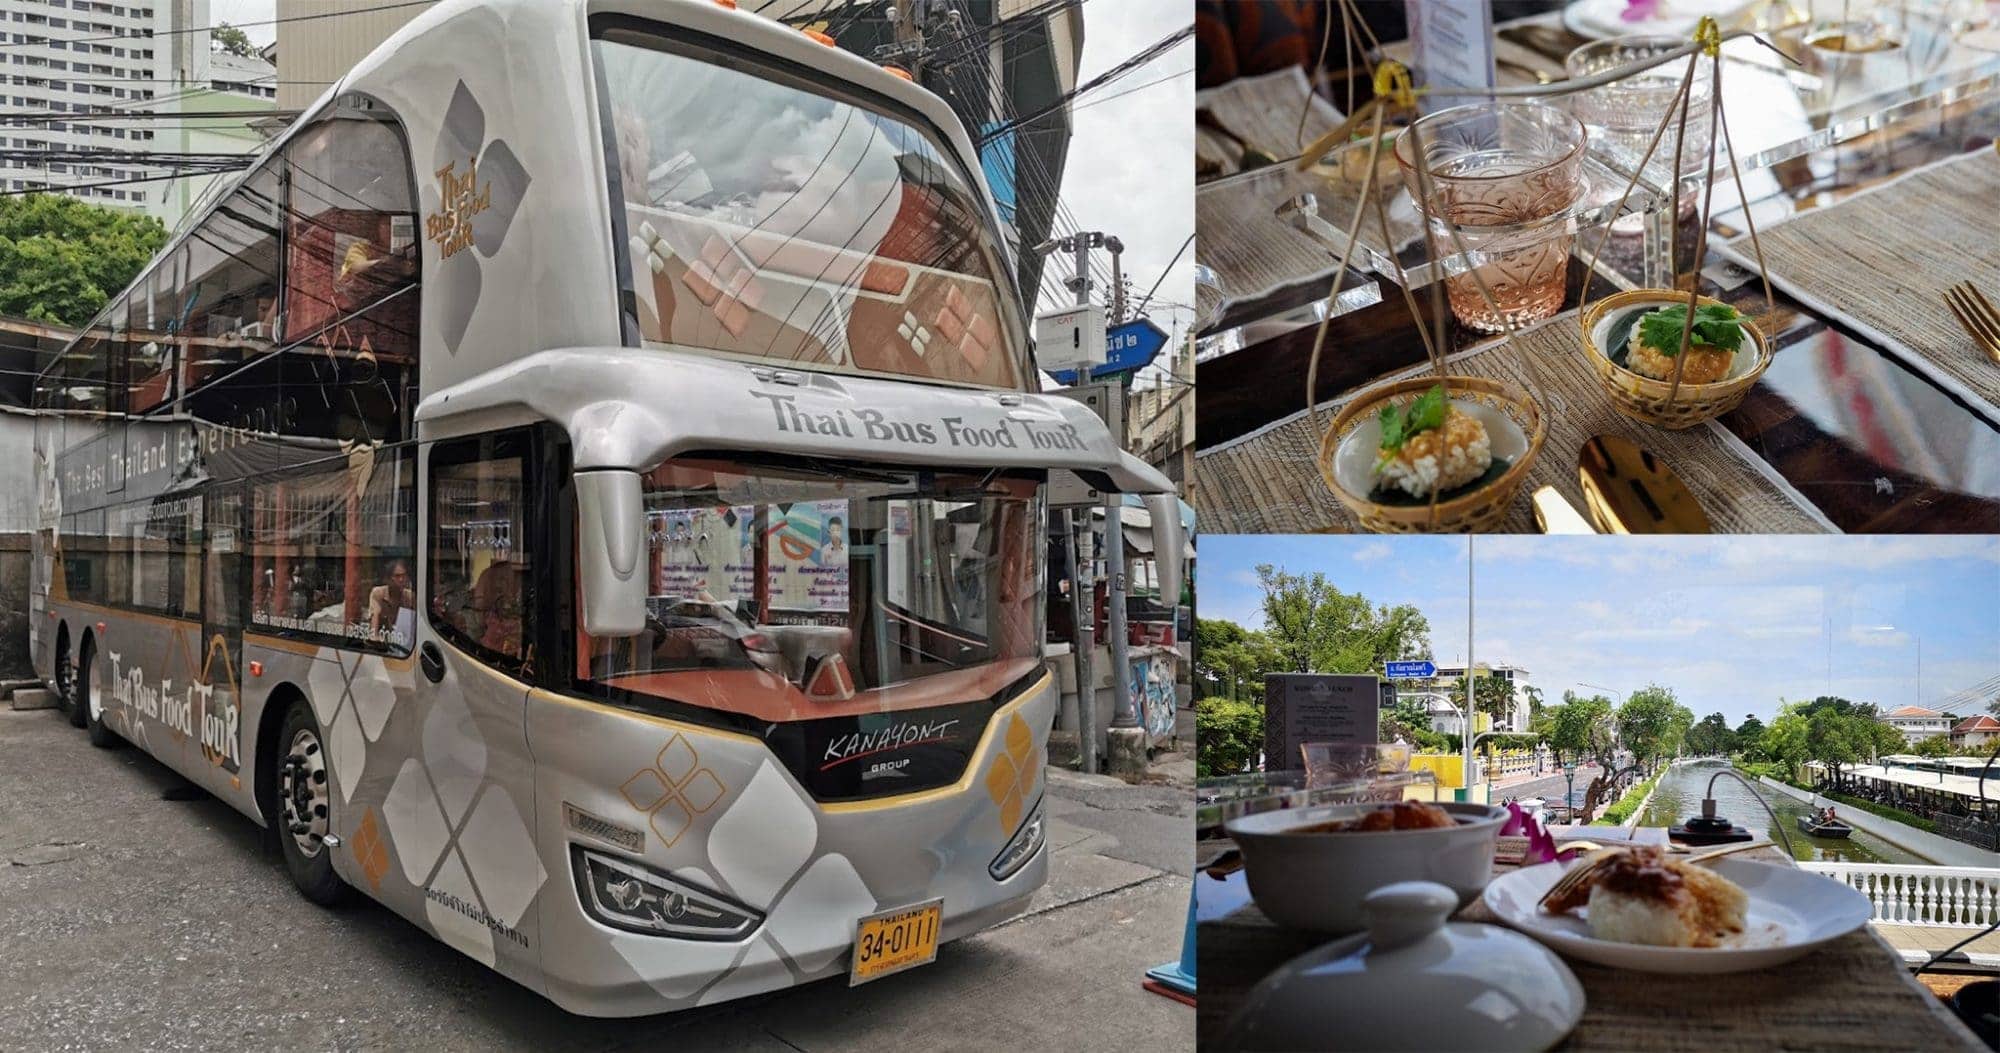 รีวิว Thai Bus Food Tour นั่งรถบัสกินอาหารระดับ Michelin รอบกรุง 1